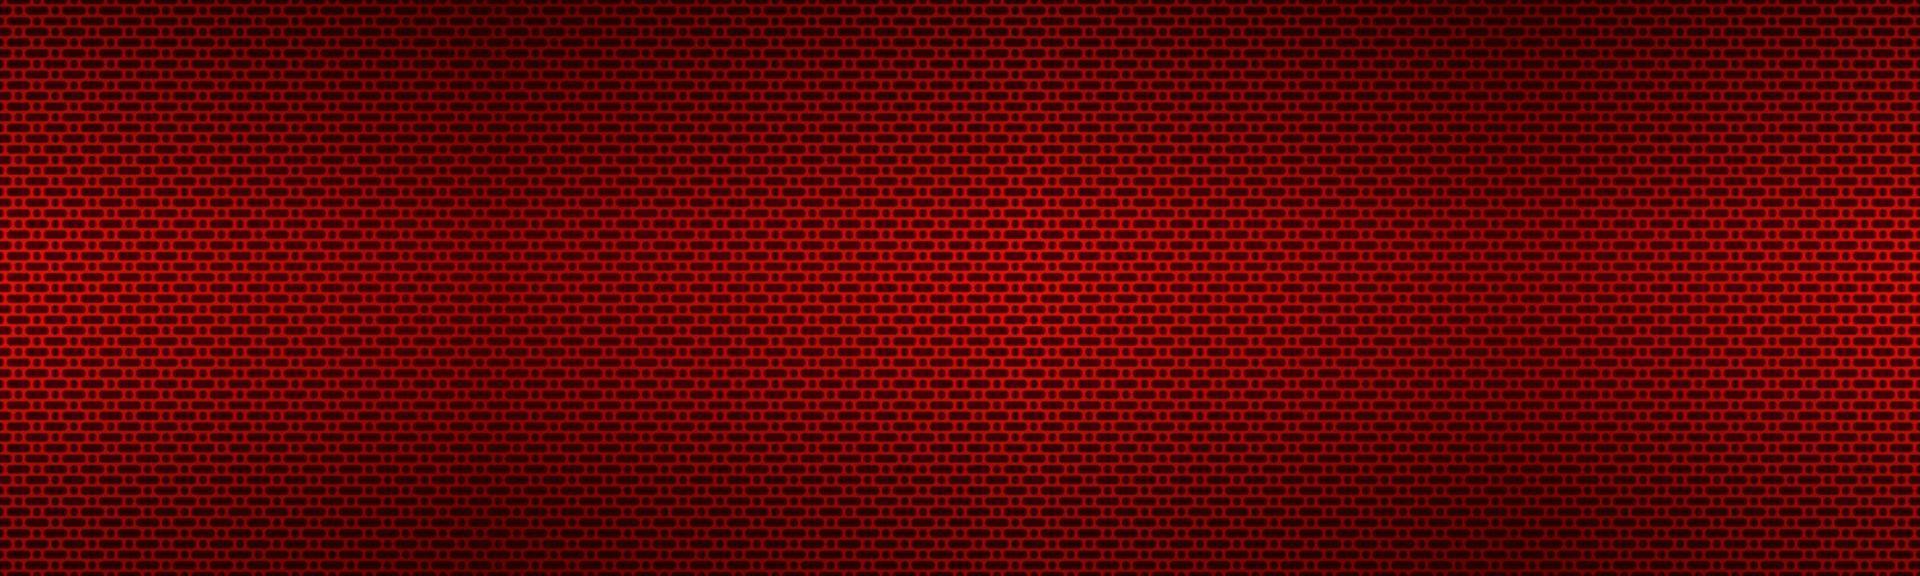 geperforeerde rode metalen kop. metalen textuur banner. eenvoudige texnology illustratie. cirkel, afgeronde rechthoek en ovaal geperforeerd vector